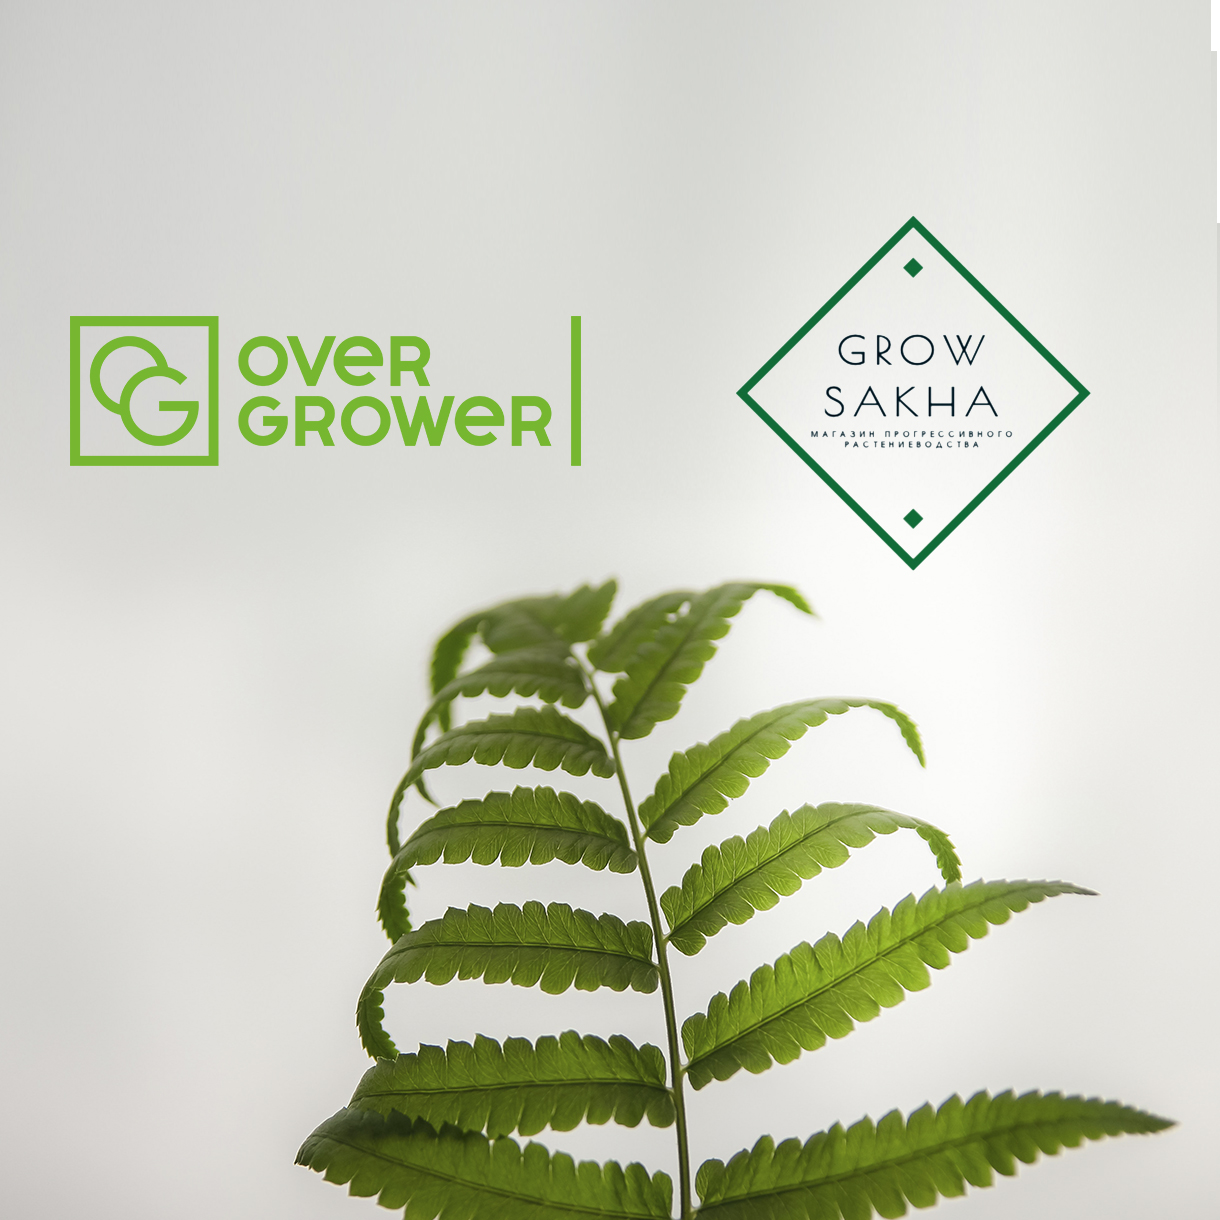 Компания GROW SAKHA оказывает полный спектр услуг OverGrower!